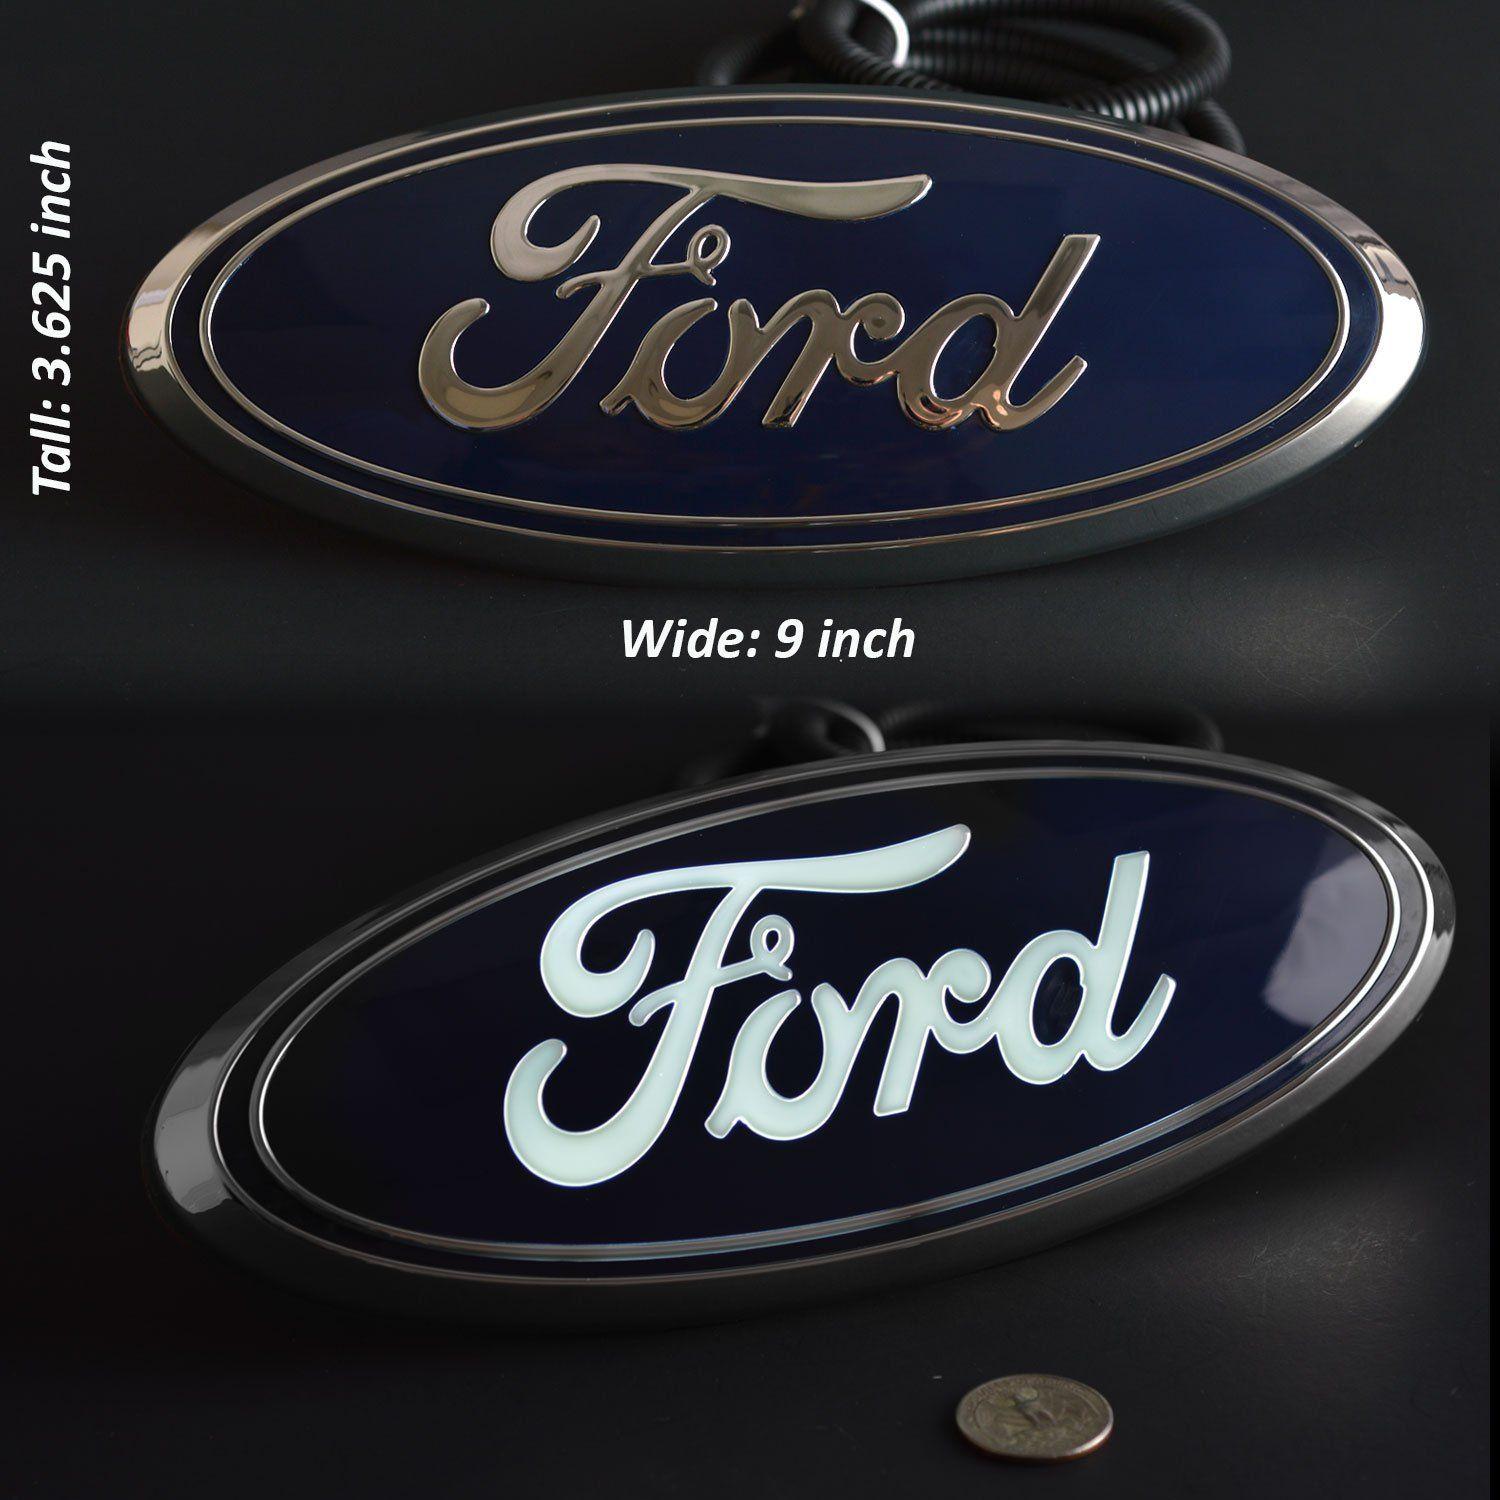 2014 Ford Logo - Ford Lighted Grill Emblem Blue 9” 2016 2018 Explorer 2004 2014 F150